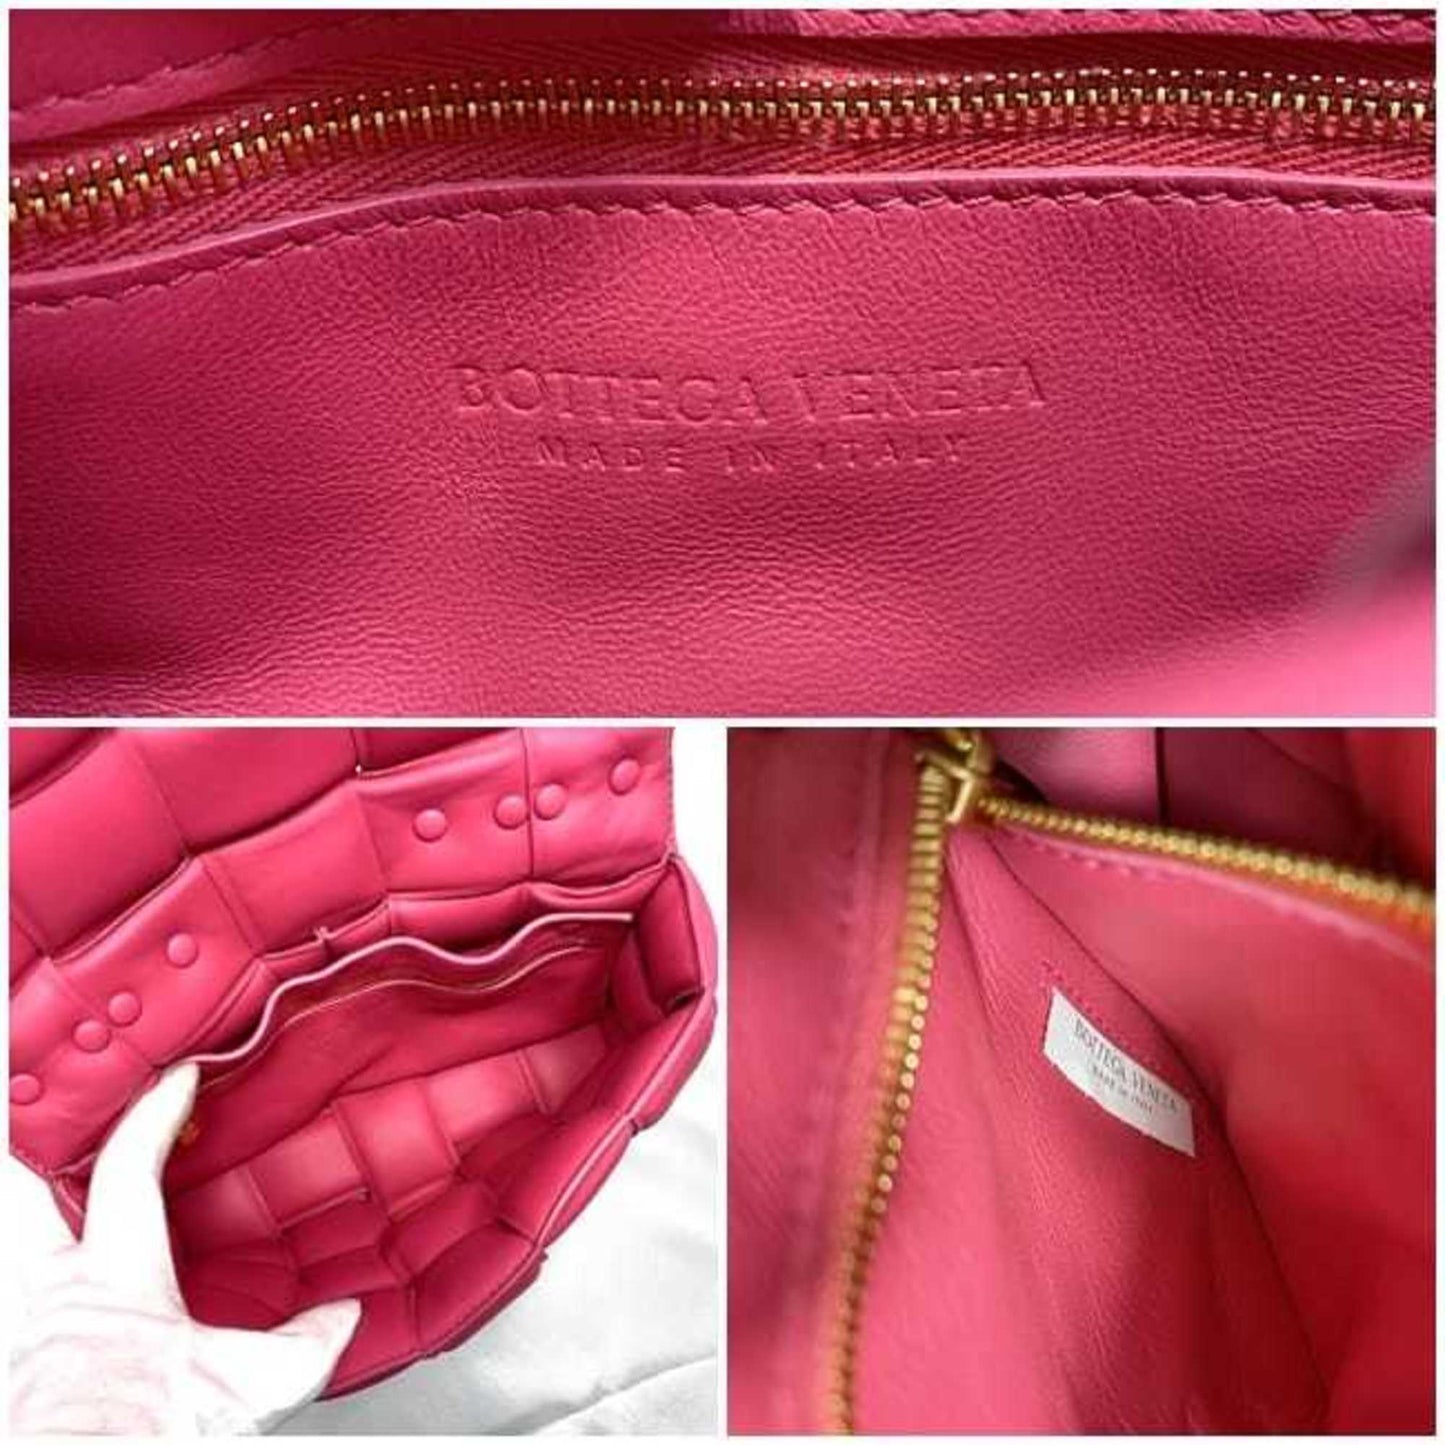 Bottega Veneta Women's Pink Leather Shoulder Bag with Gold Hardware in Pink